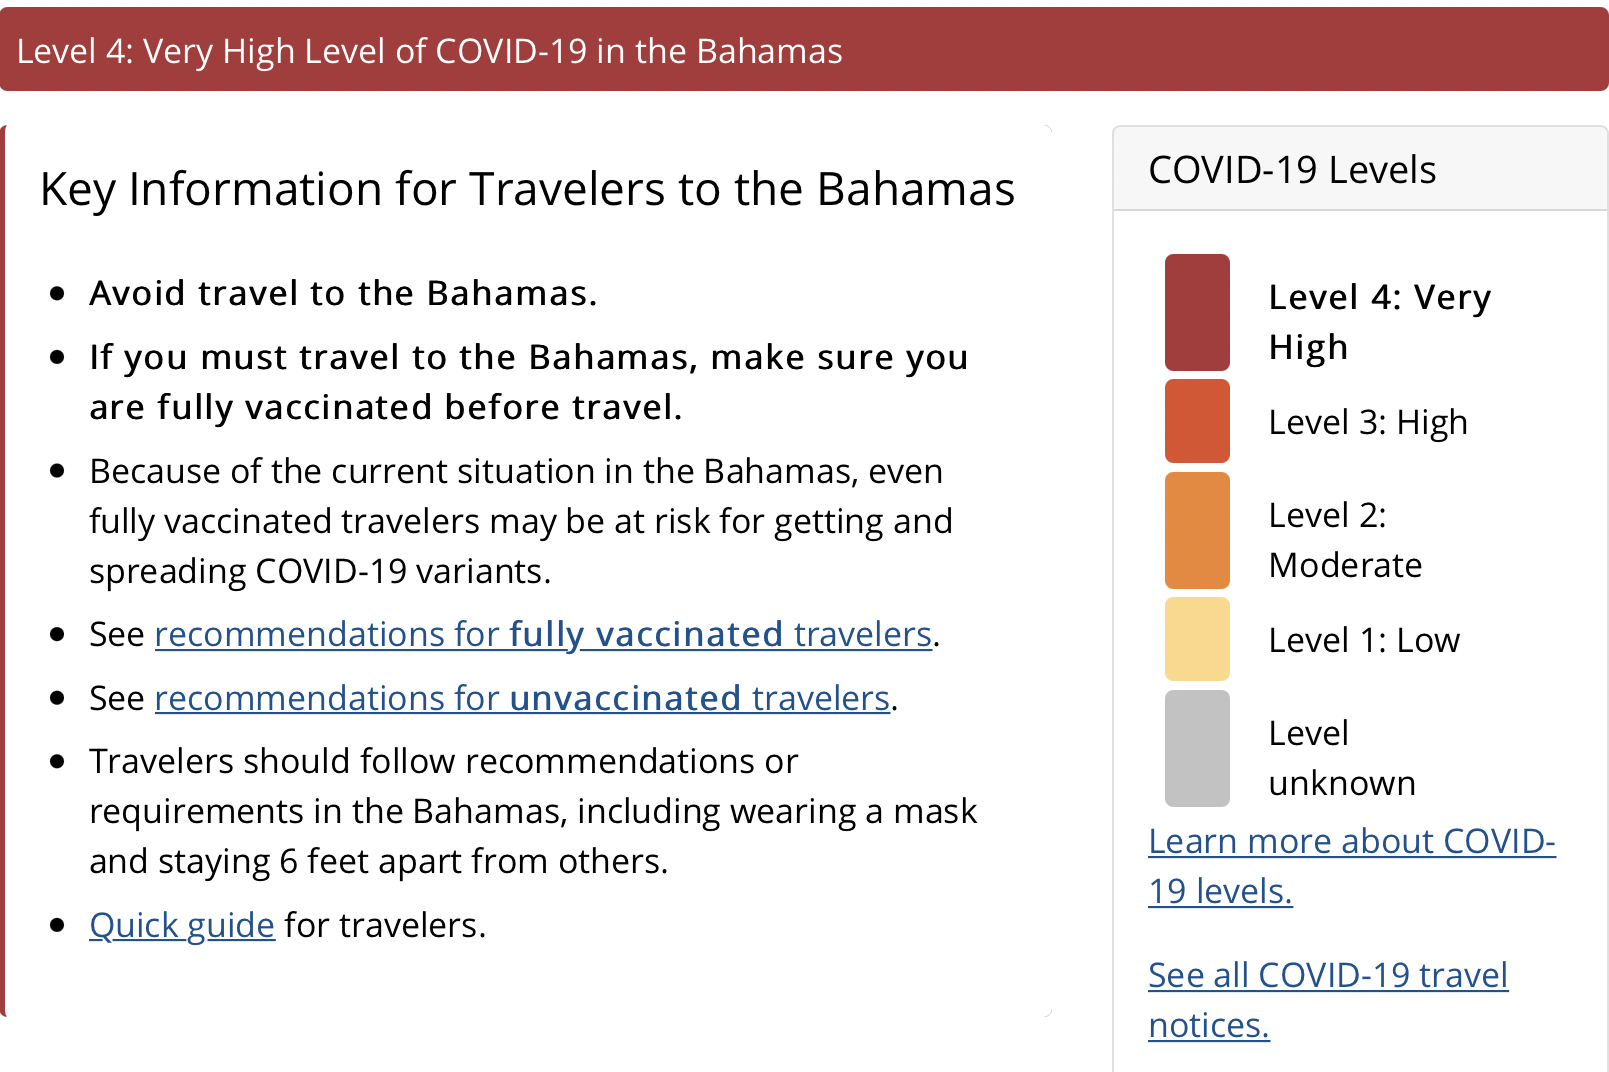 New CDC Travel Advisory May Impact Cruising in the Bahamas Disney by Mark